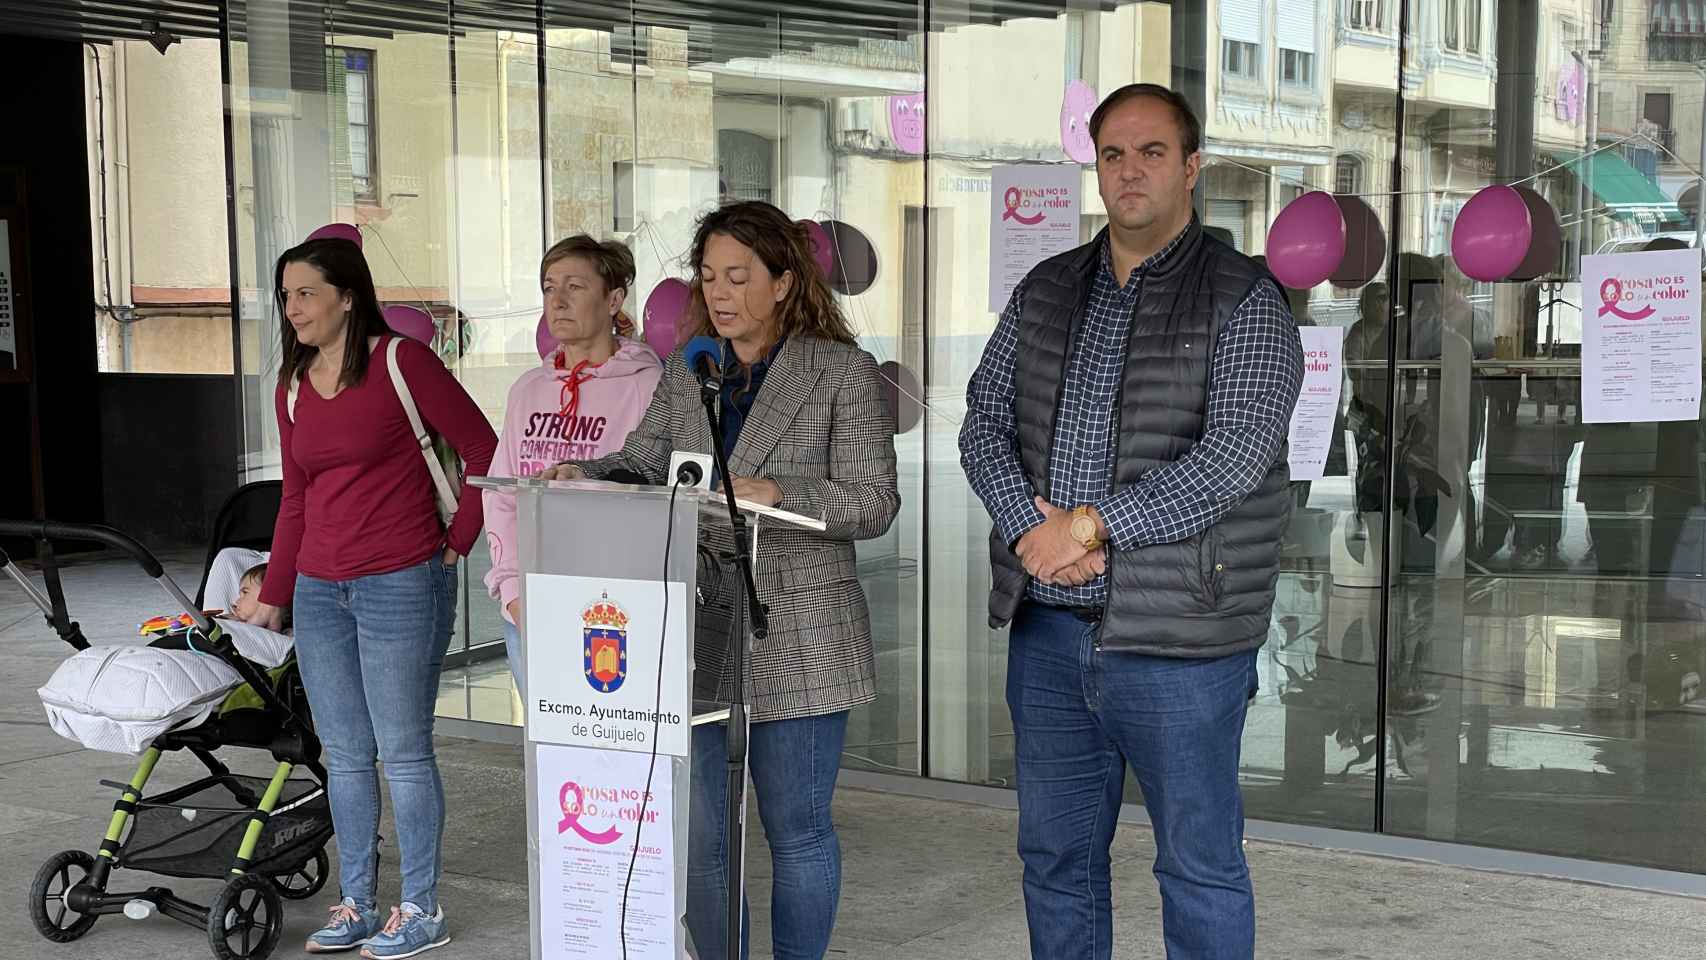 Lectura del manifiesto por parte de la concejala de Igualdad, María Jesús Moro, en compañía del alcalde, Roberto Martín